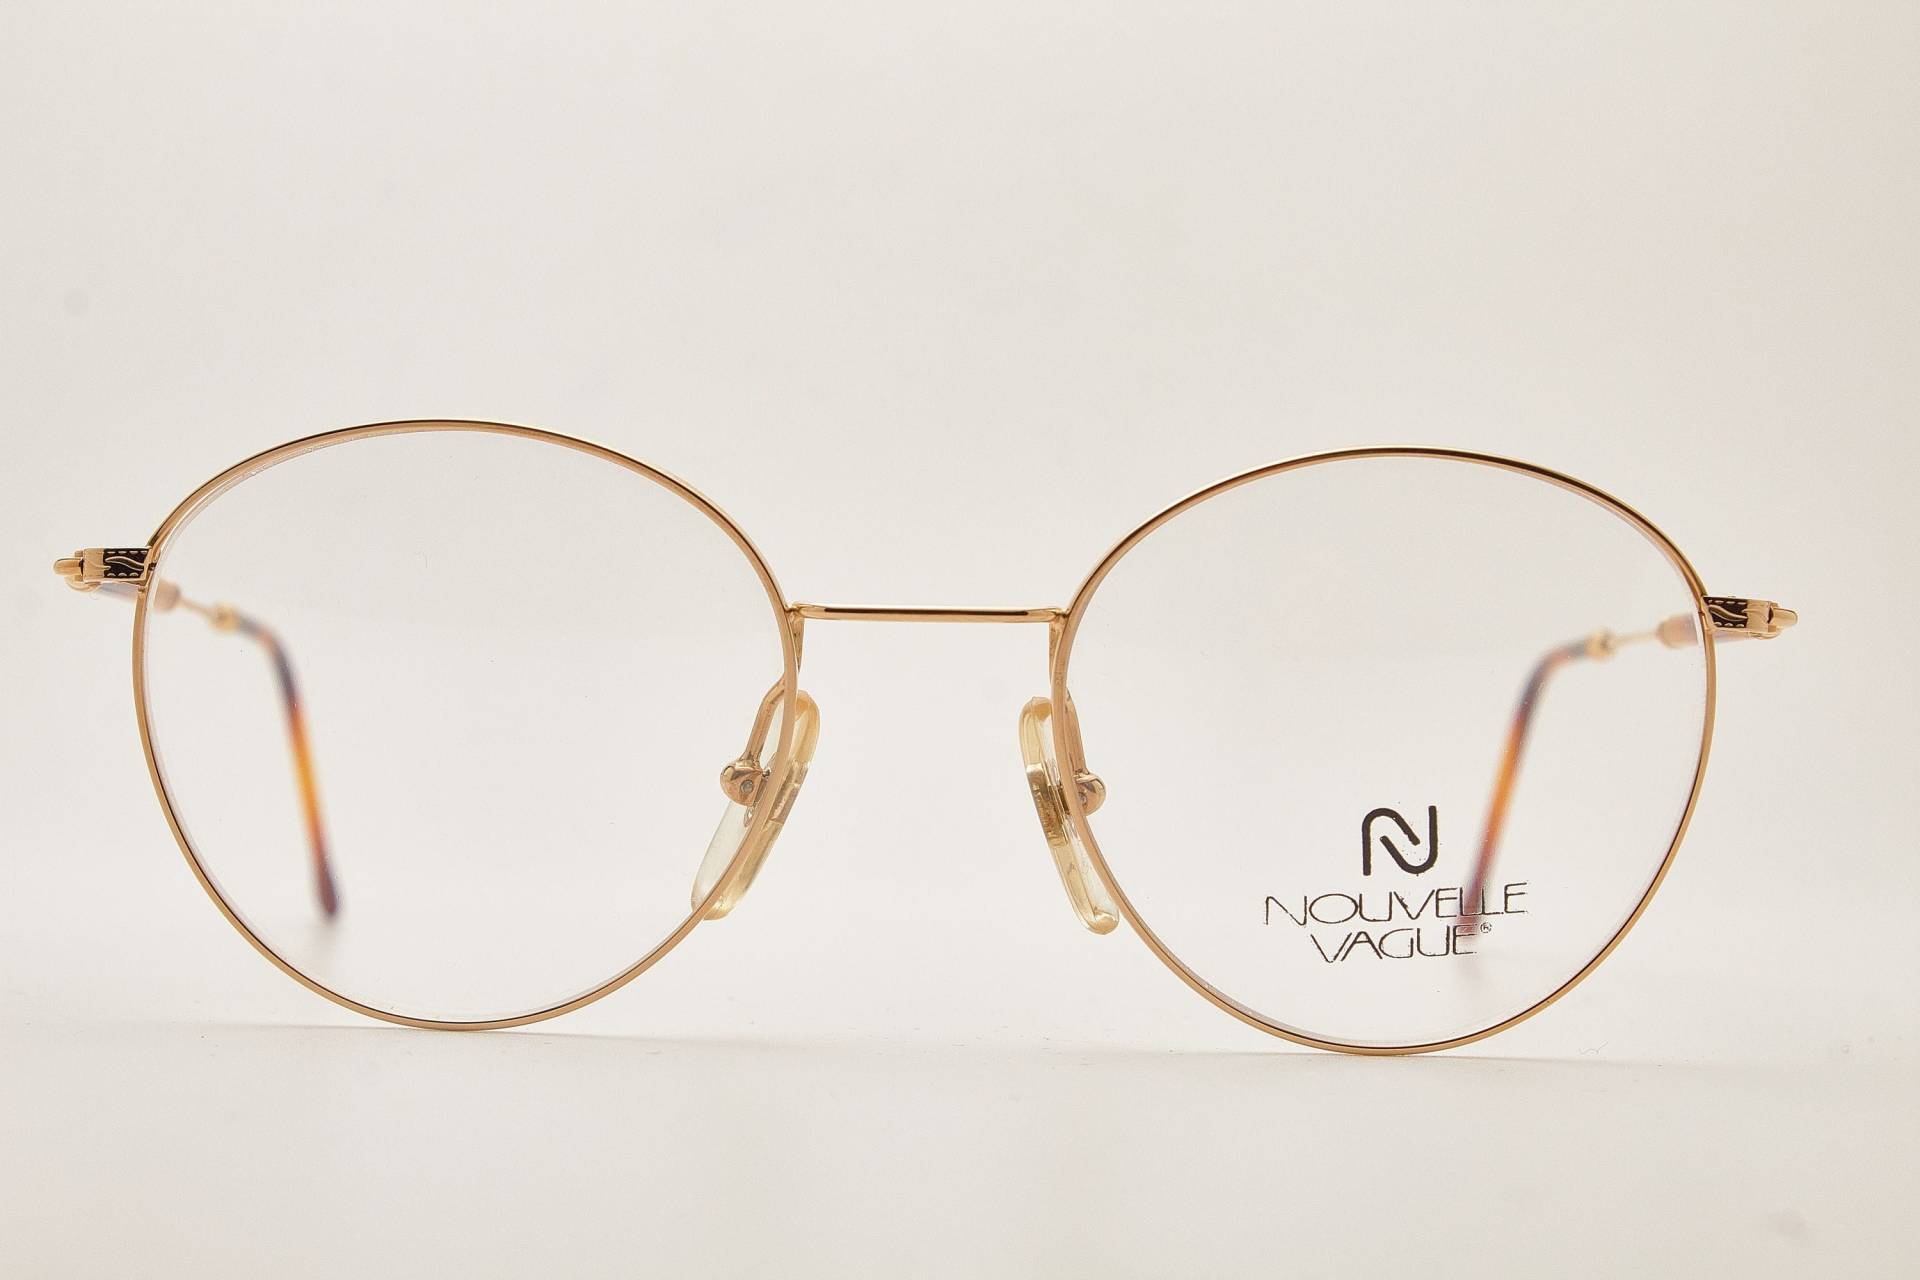 Runde Brille 1980Er Jahre Nouvelle Vague Ray Gold Metal Frame/Hipster Brille/Runde Brille/Vintage von VintageGlassesVault